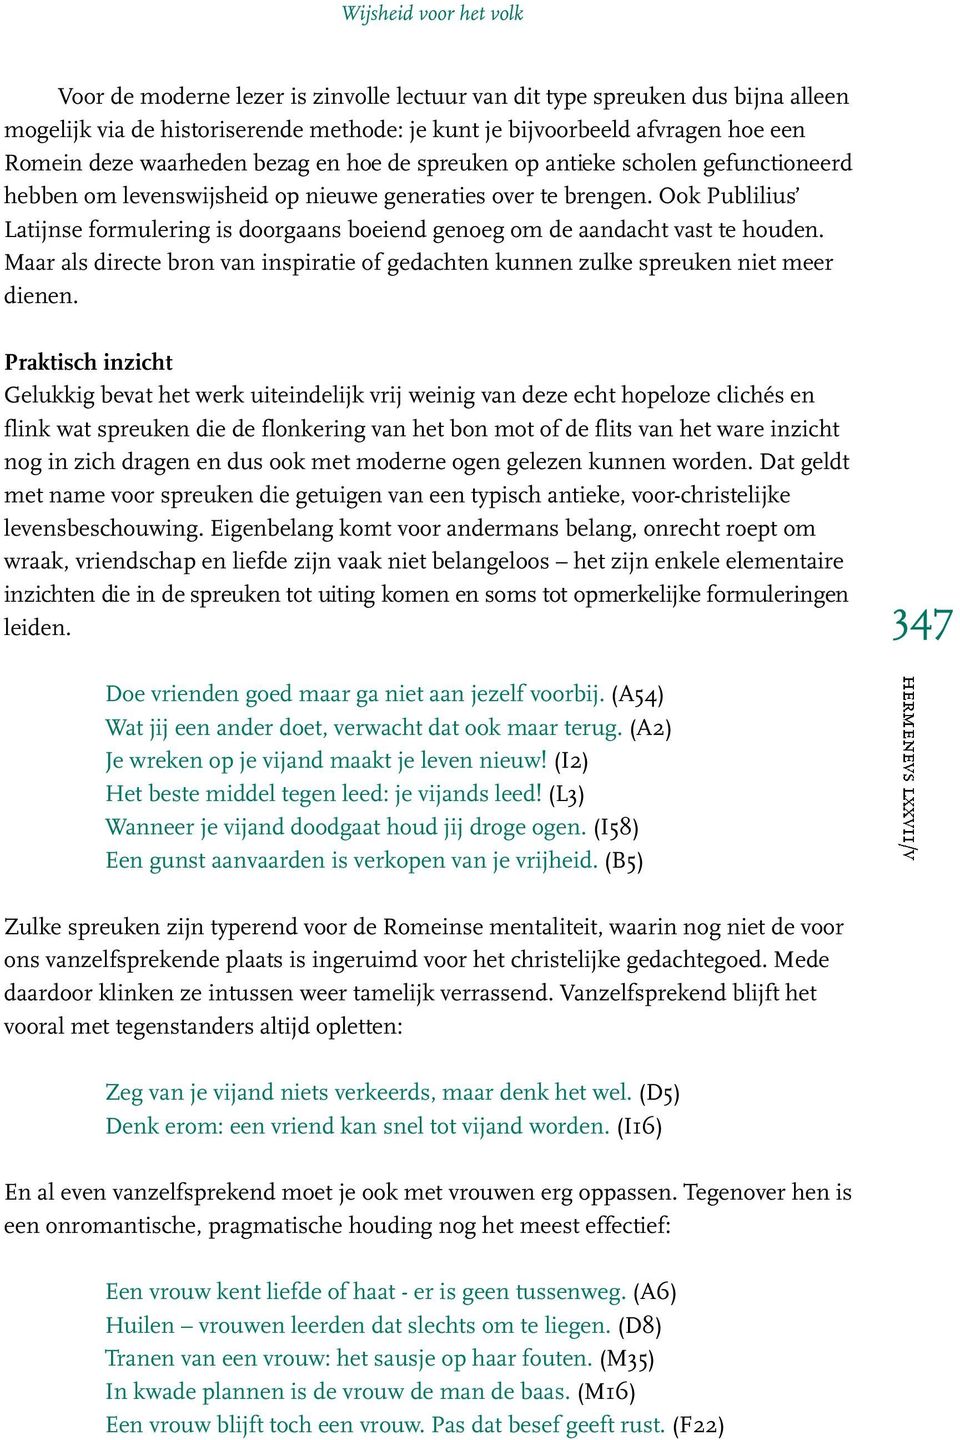 Ongebruikt Wijsheid voor het volk De spreuken van Publilius Syrus - PDF XL-77